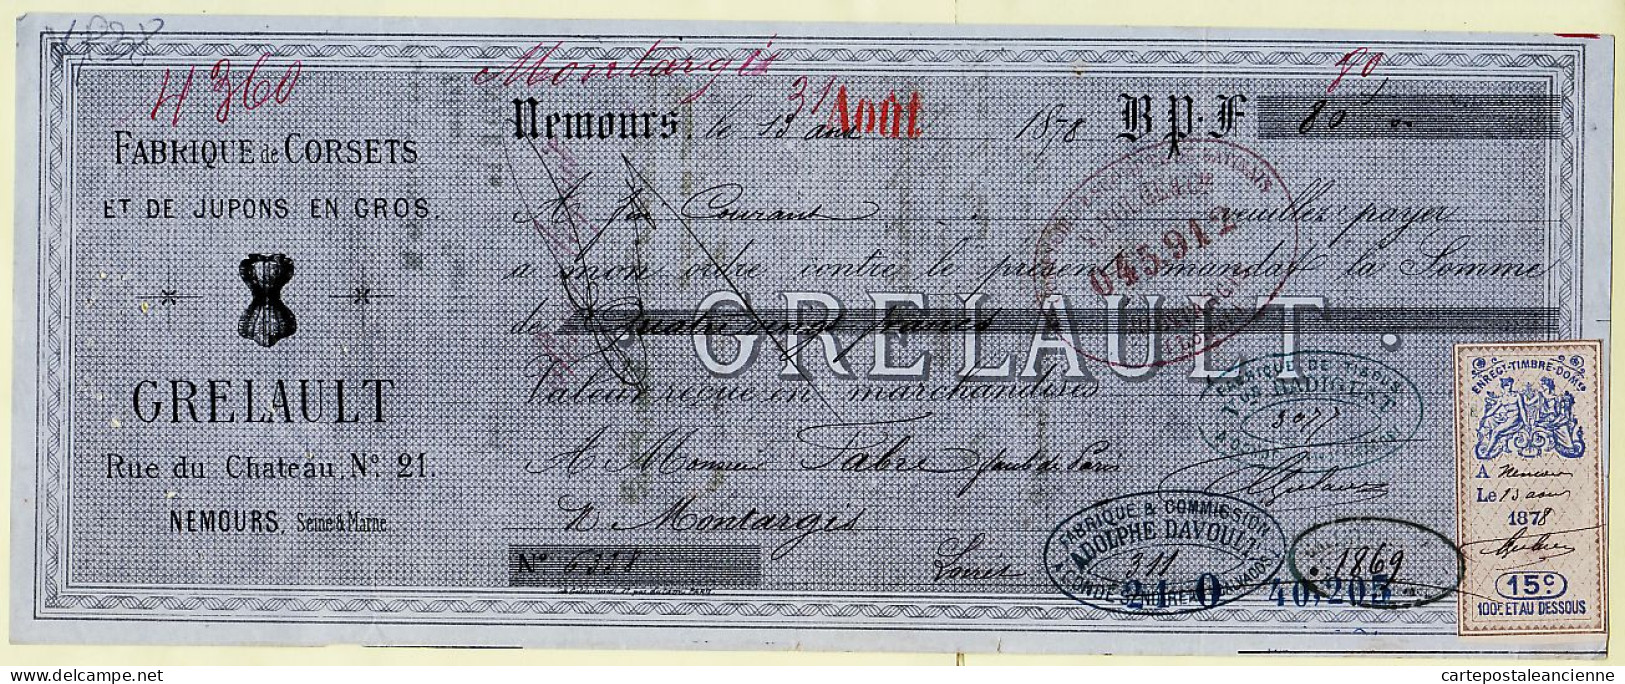 31260 / Lettre De Change 13.08.1878 Corset Jupon GRELAULT Rue Chateau Nemours à FABRE Montargis Timbre Fiscal - Wissels